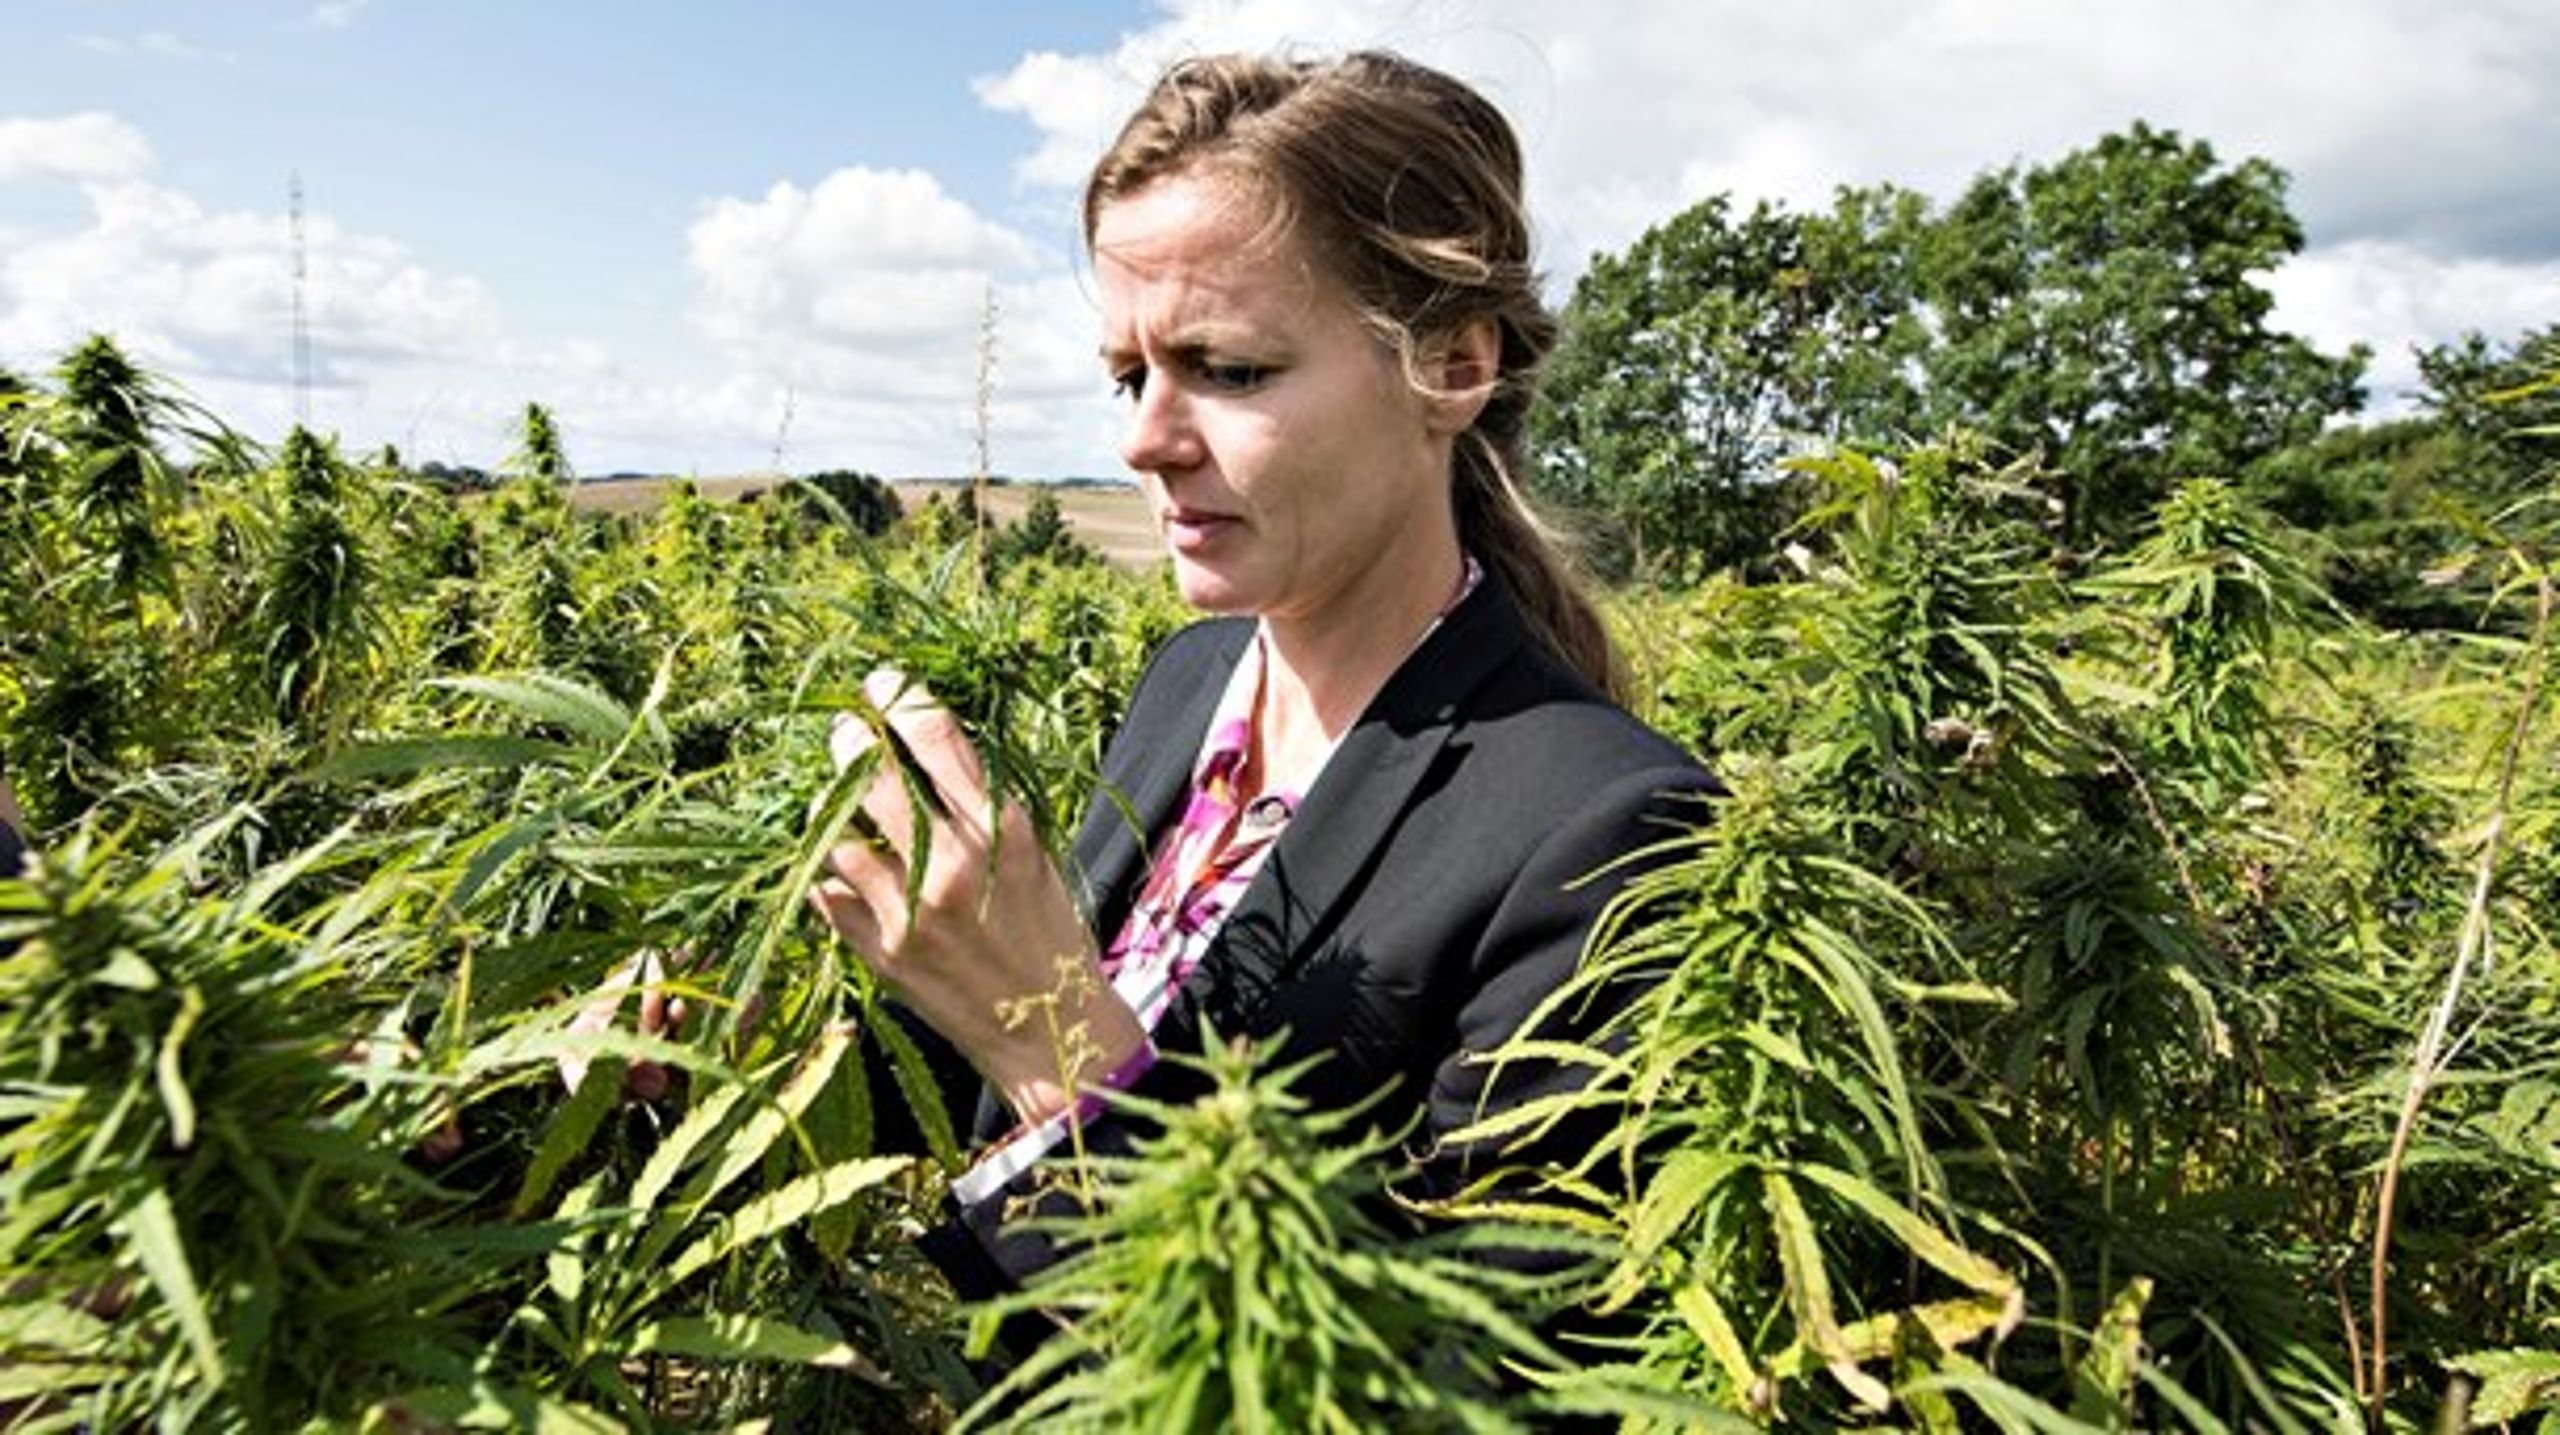 Tidligere sundhedsminister Ellen Trane Nørby (V) stod bag forsøgsordningen med medicinsk cannabis. Her besøger hun en hampemark.&nbsp;